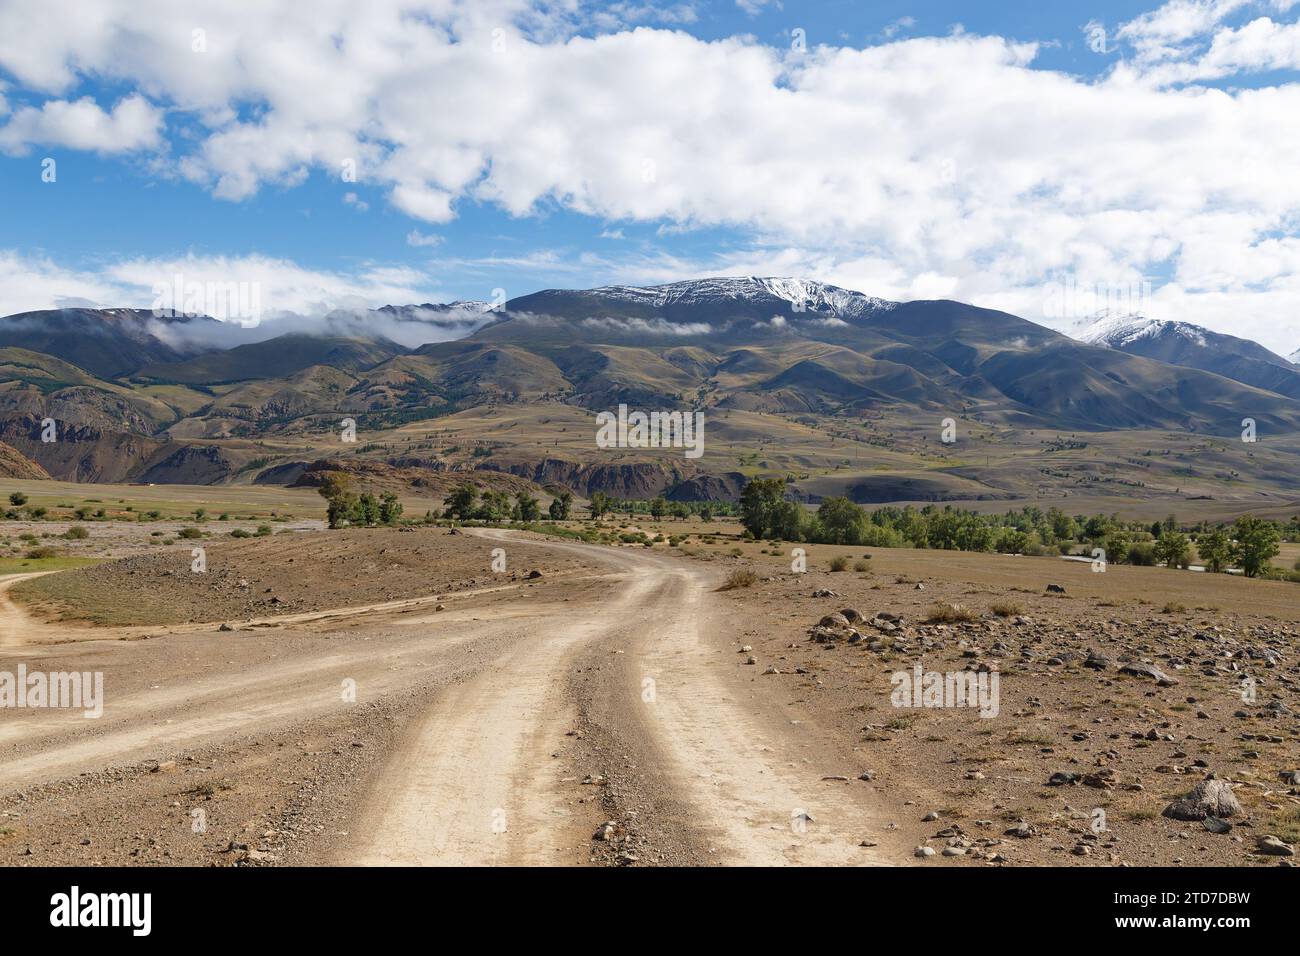 Paysage avec une route et de hautes montagnes enneigées dans la République de l'Altaï, Russie Banque D'Images